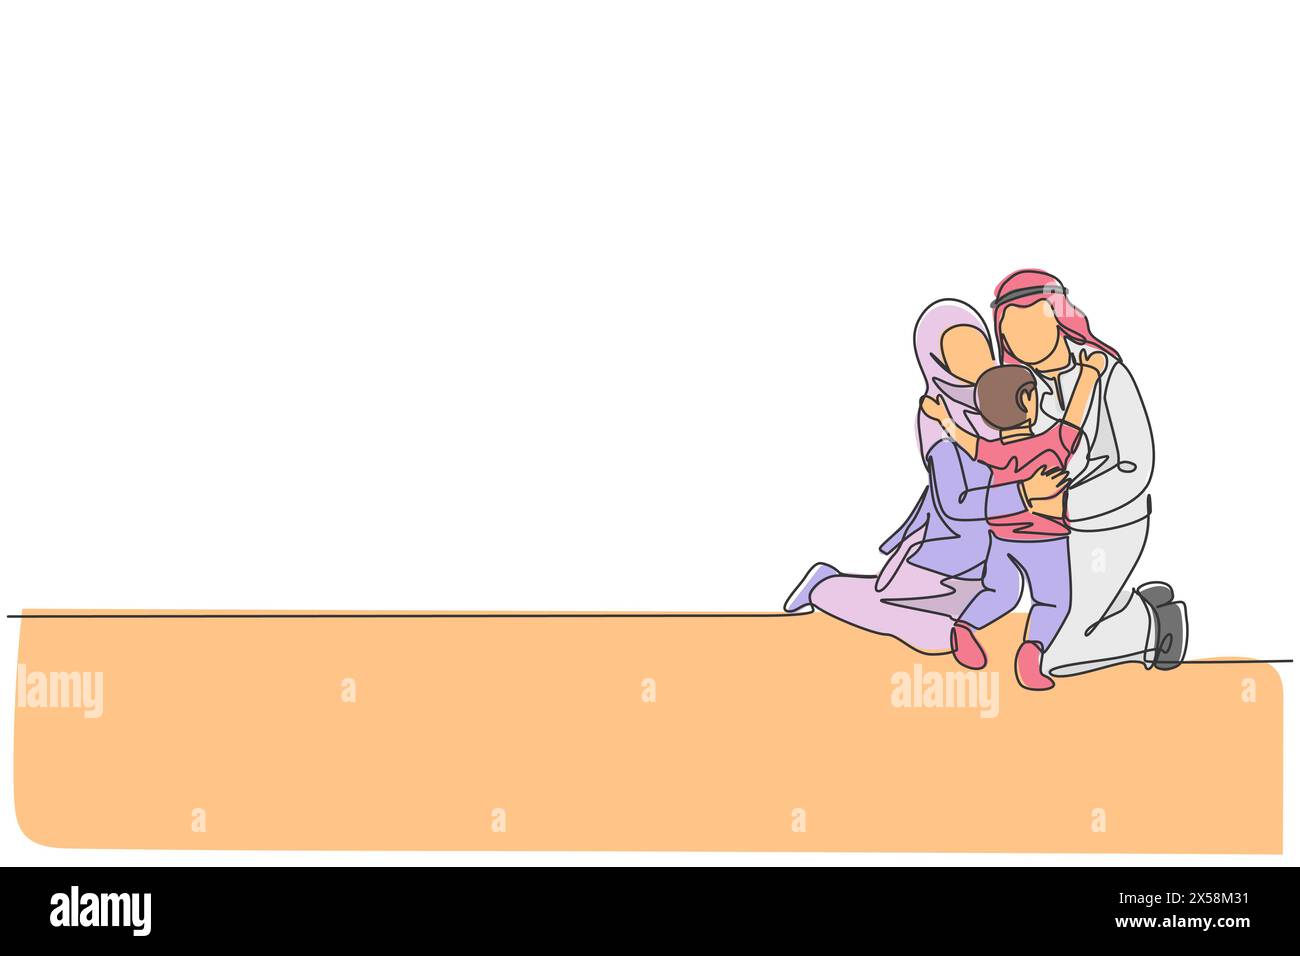 Un disegno continuo di giovane mamma e papà islamici felici che abbracciano il loro figlio maschio insieme sul pavimento. Concetto di famiglia musulmana felice. DIN Illustrazione Vettoriale